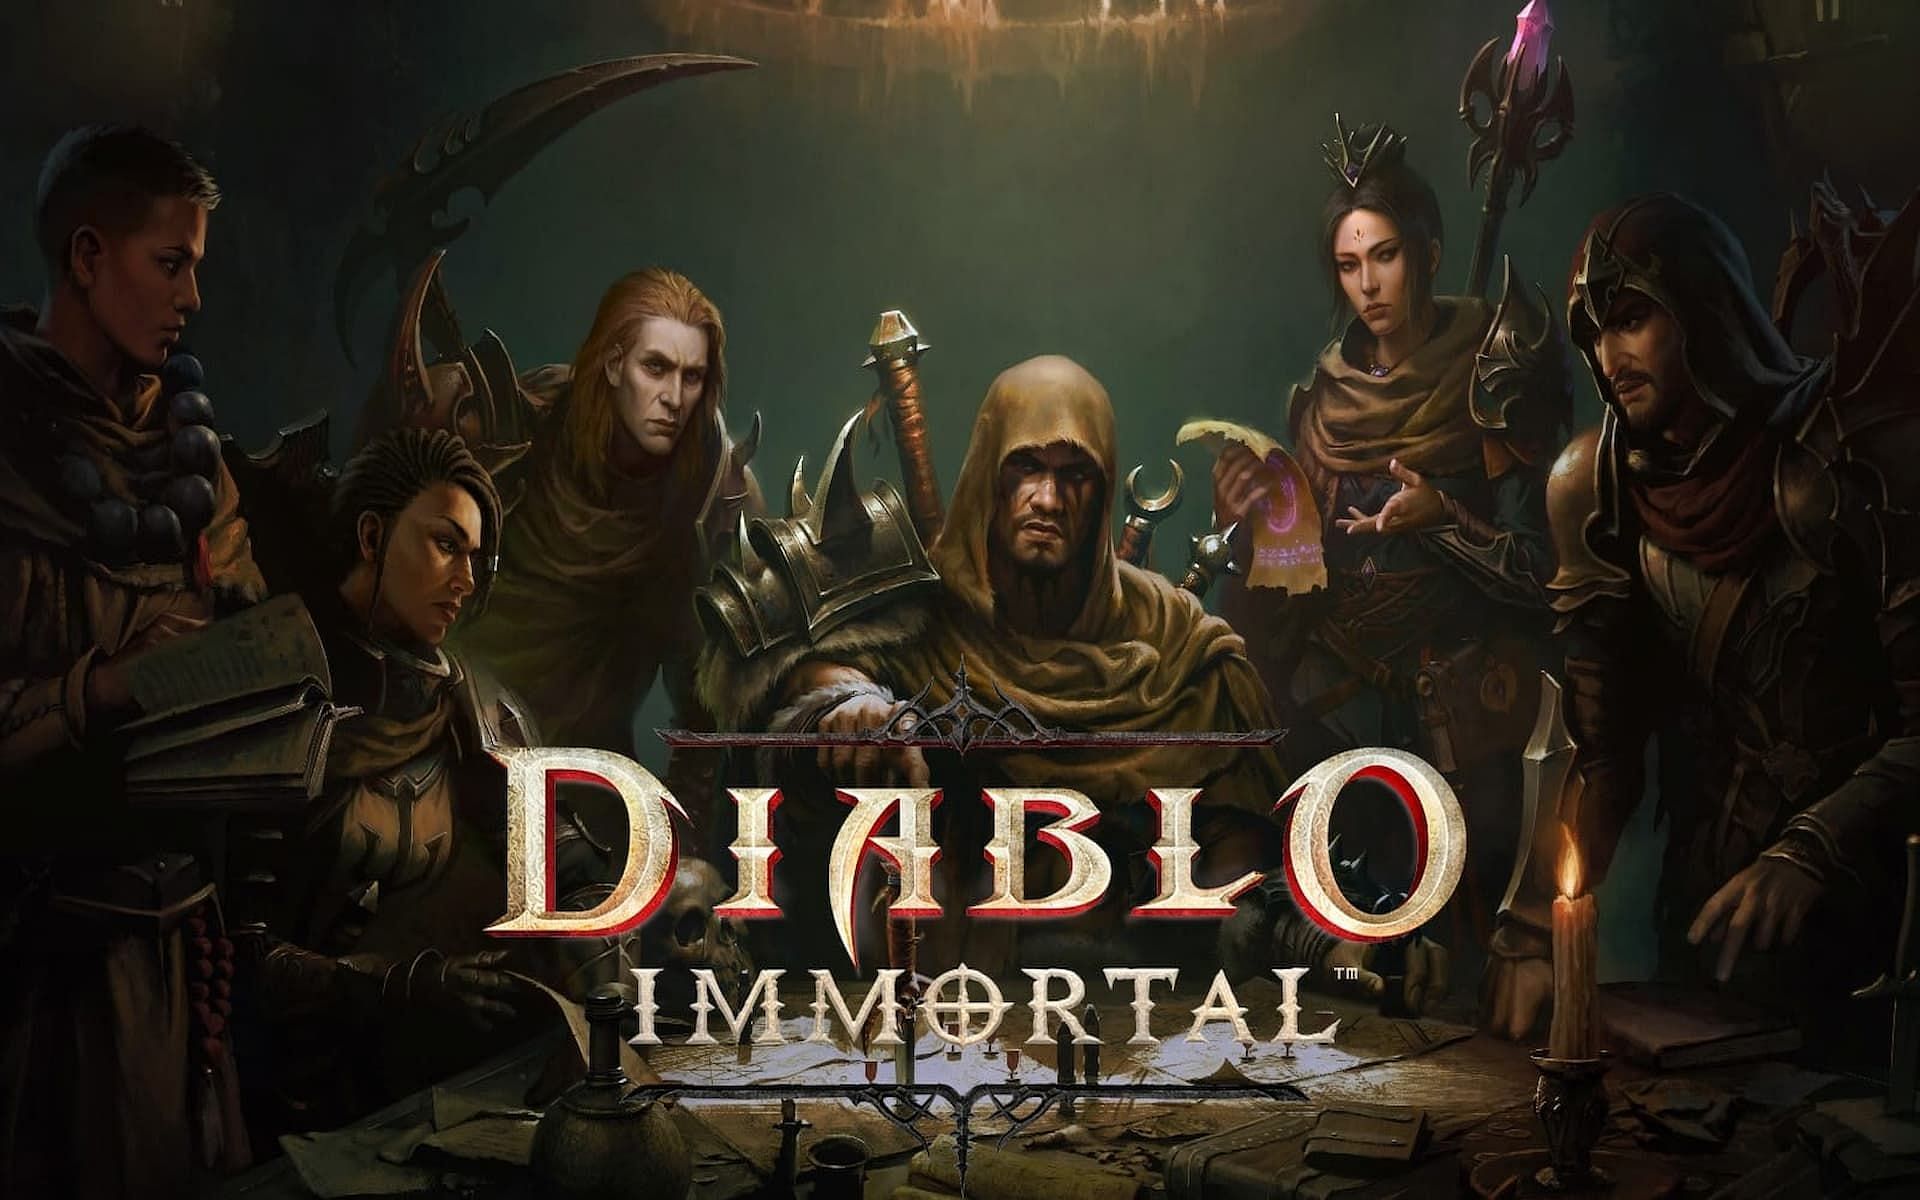 A promotional image for Diablo Immortal (Image via Blizzard Entertainment)